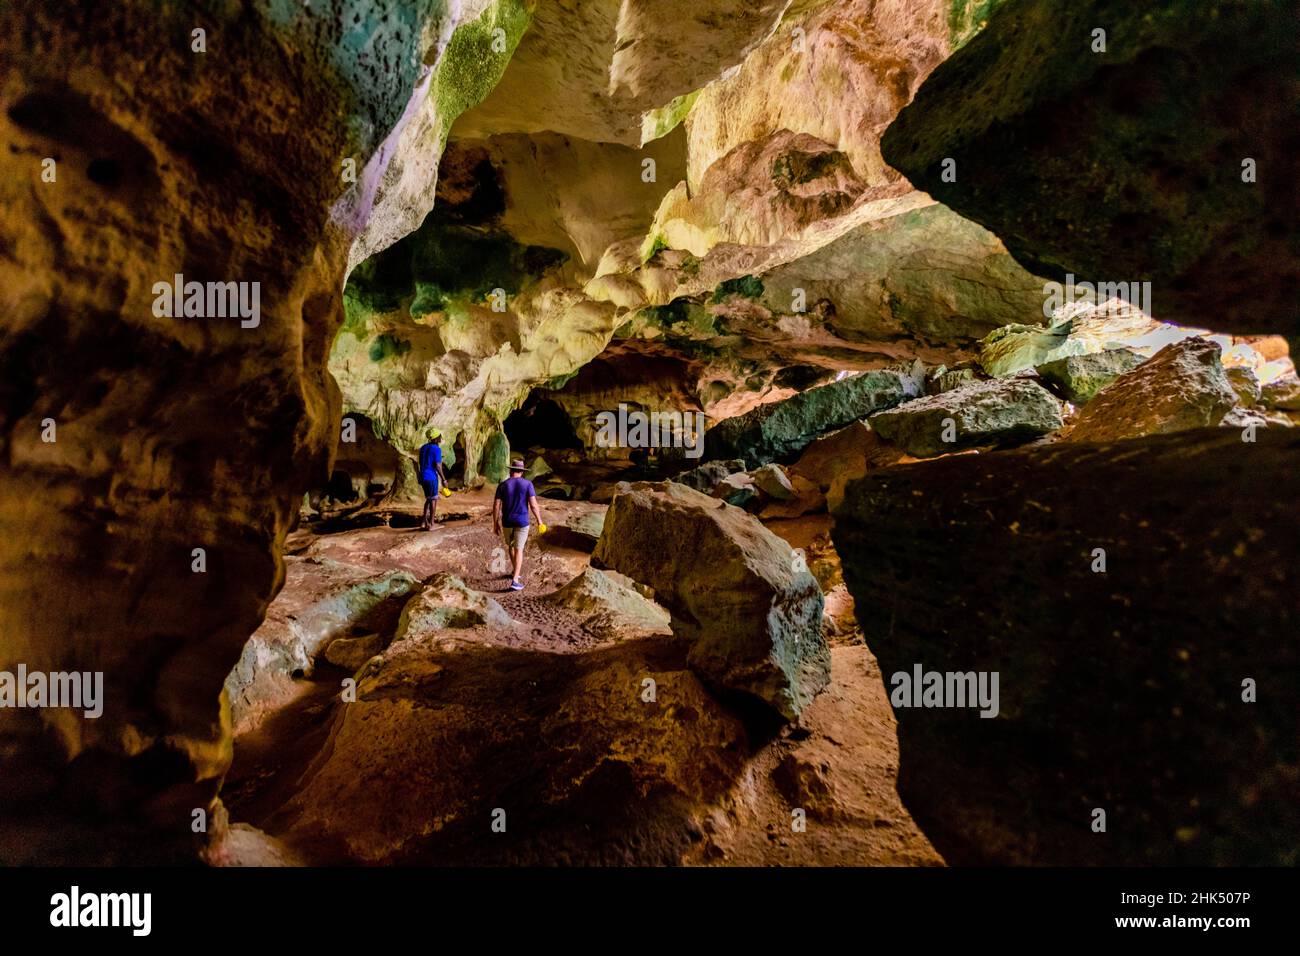 Gente explorando cuevas marinas en las Islas Turcas y Caicos del Norte, Atlántico, Centroamérica Foto de stock